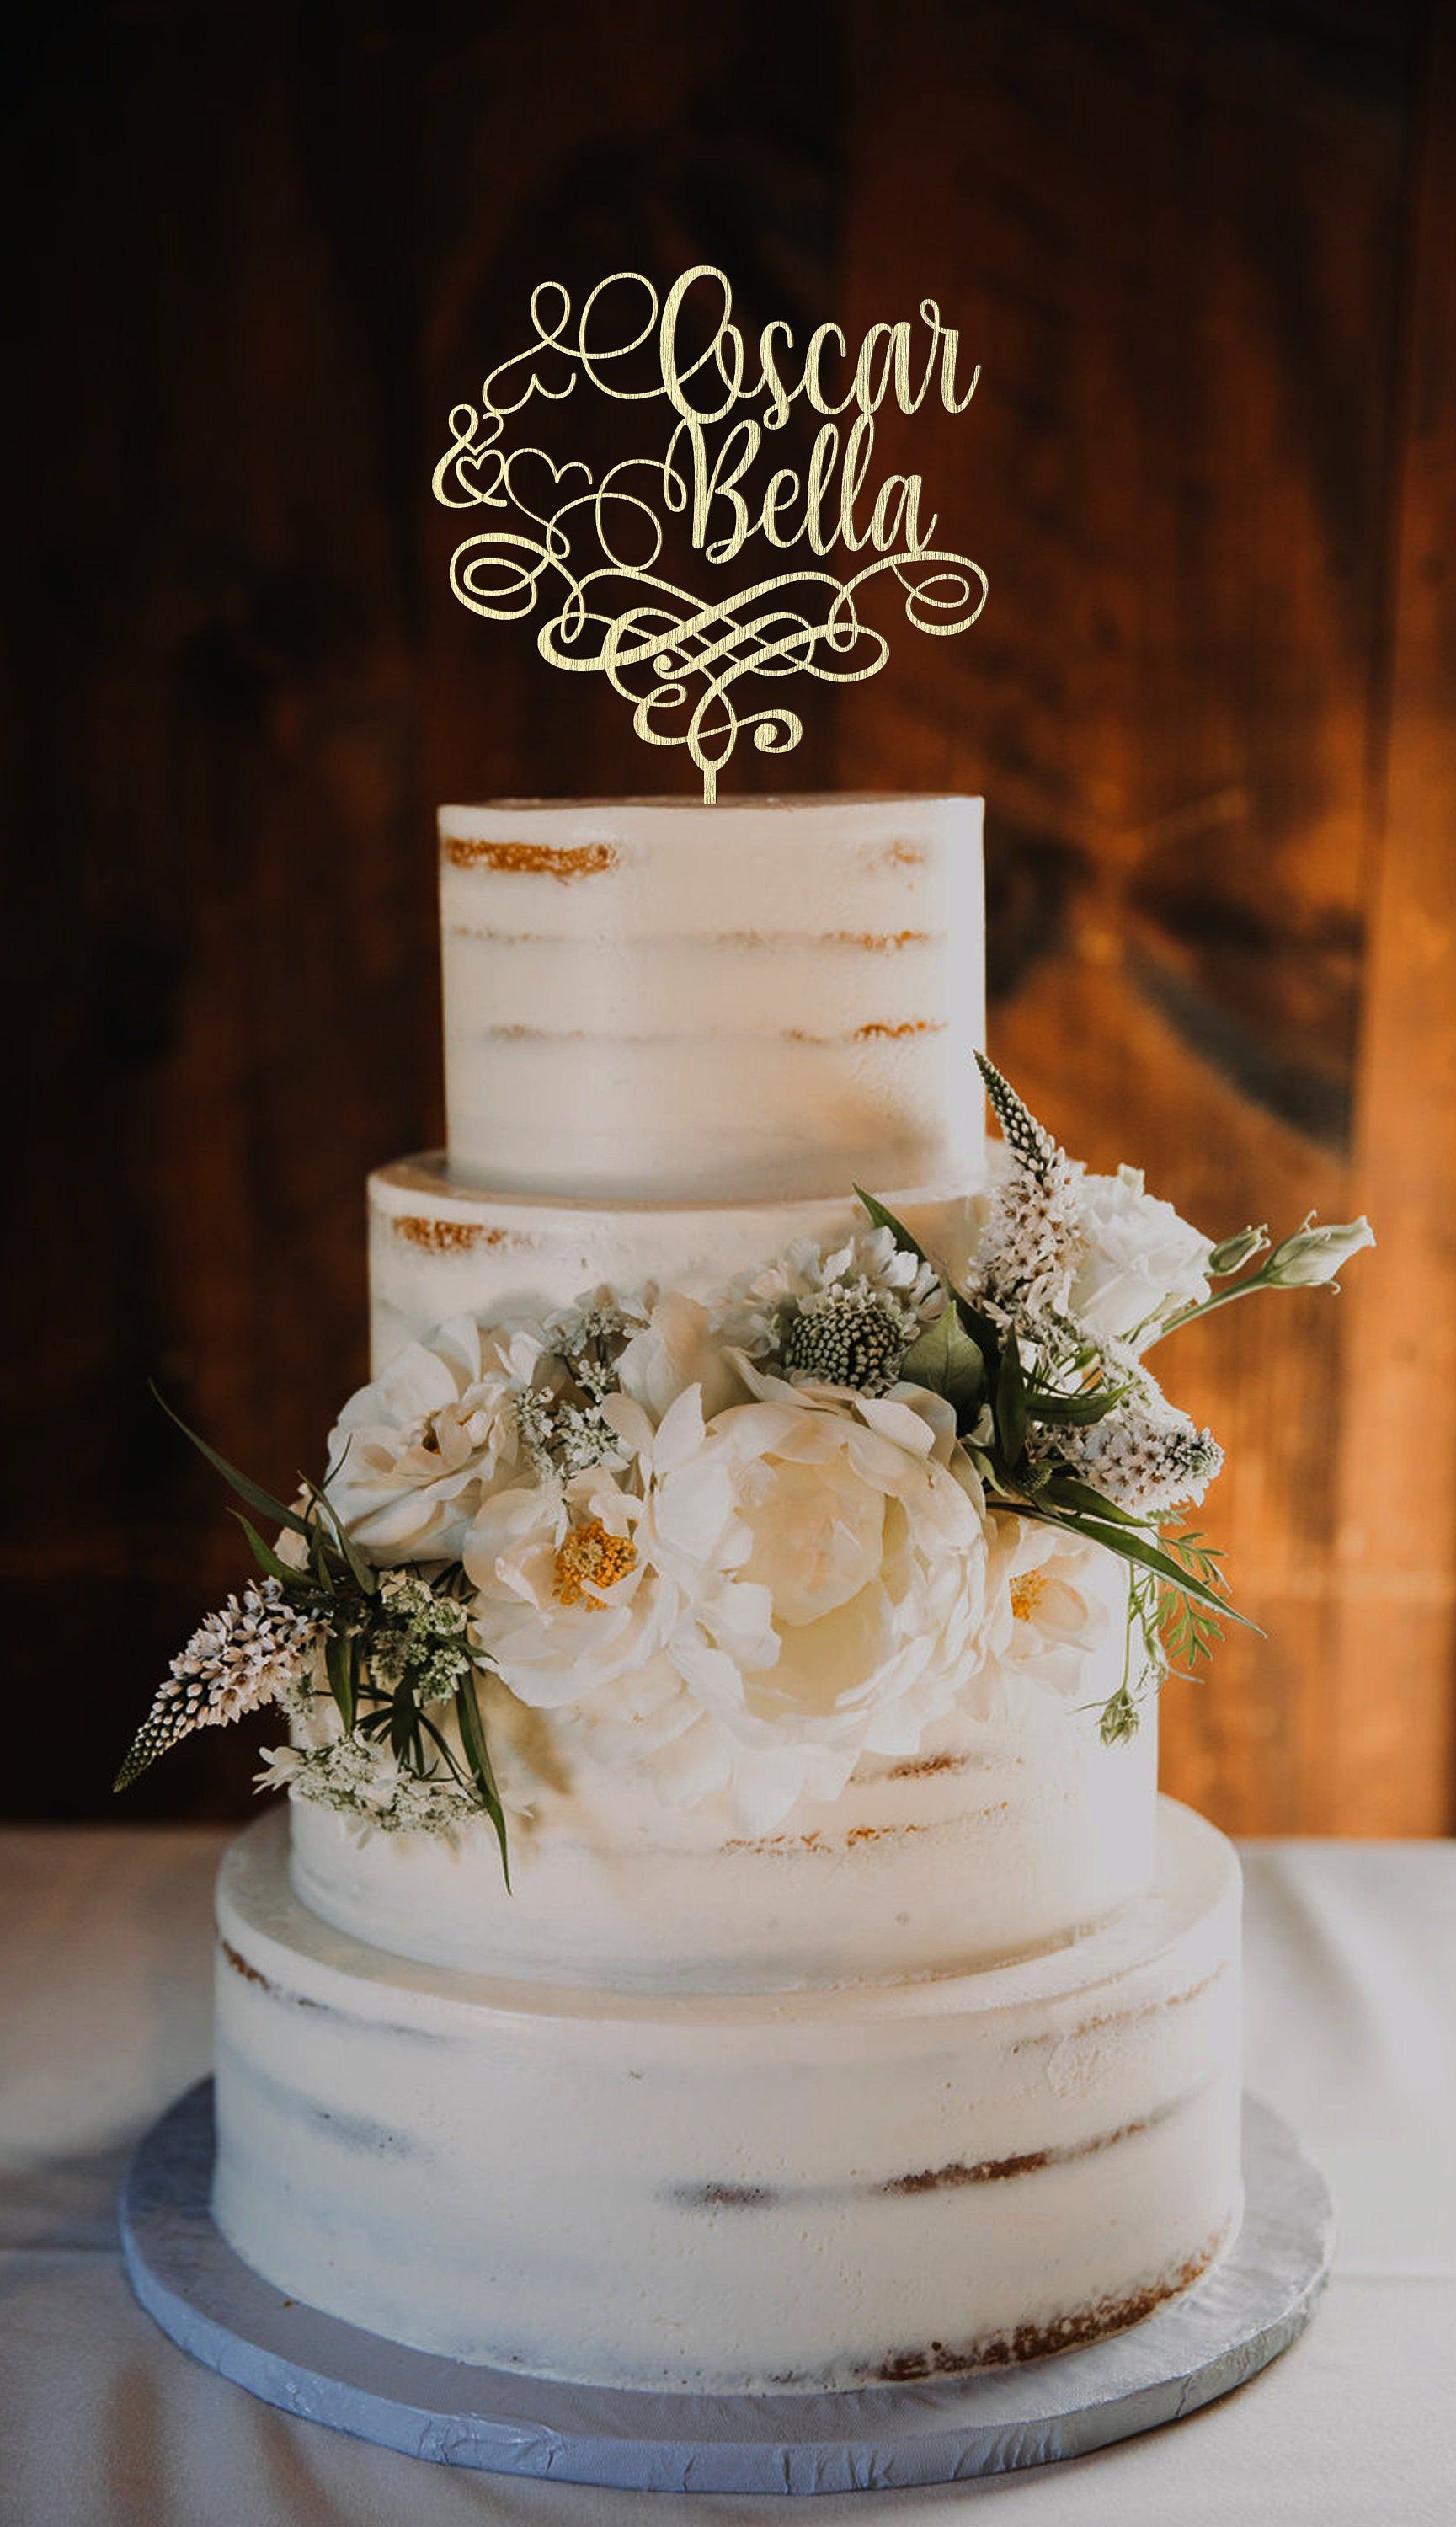 Elegant engagement cake - Decorated Cake by asli - CakesDecor